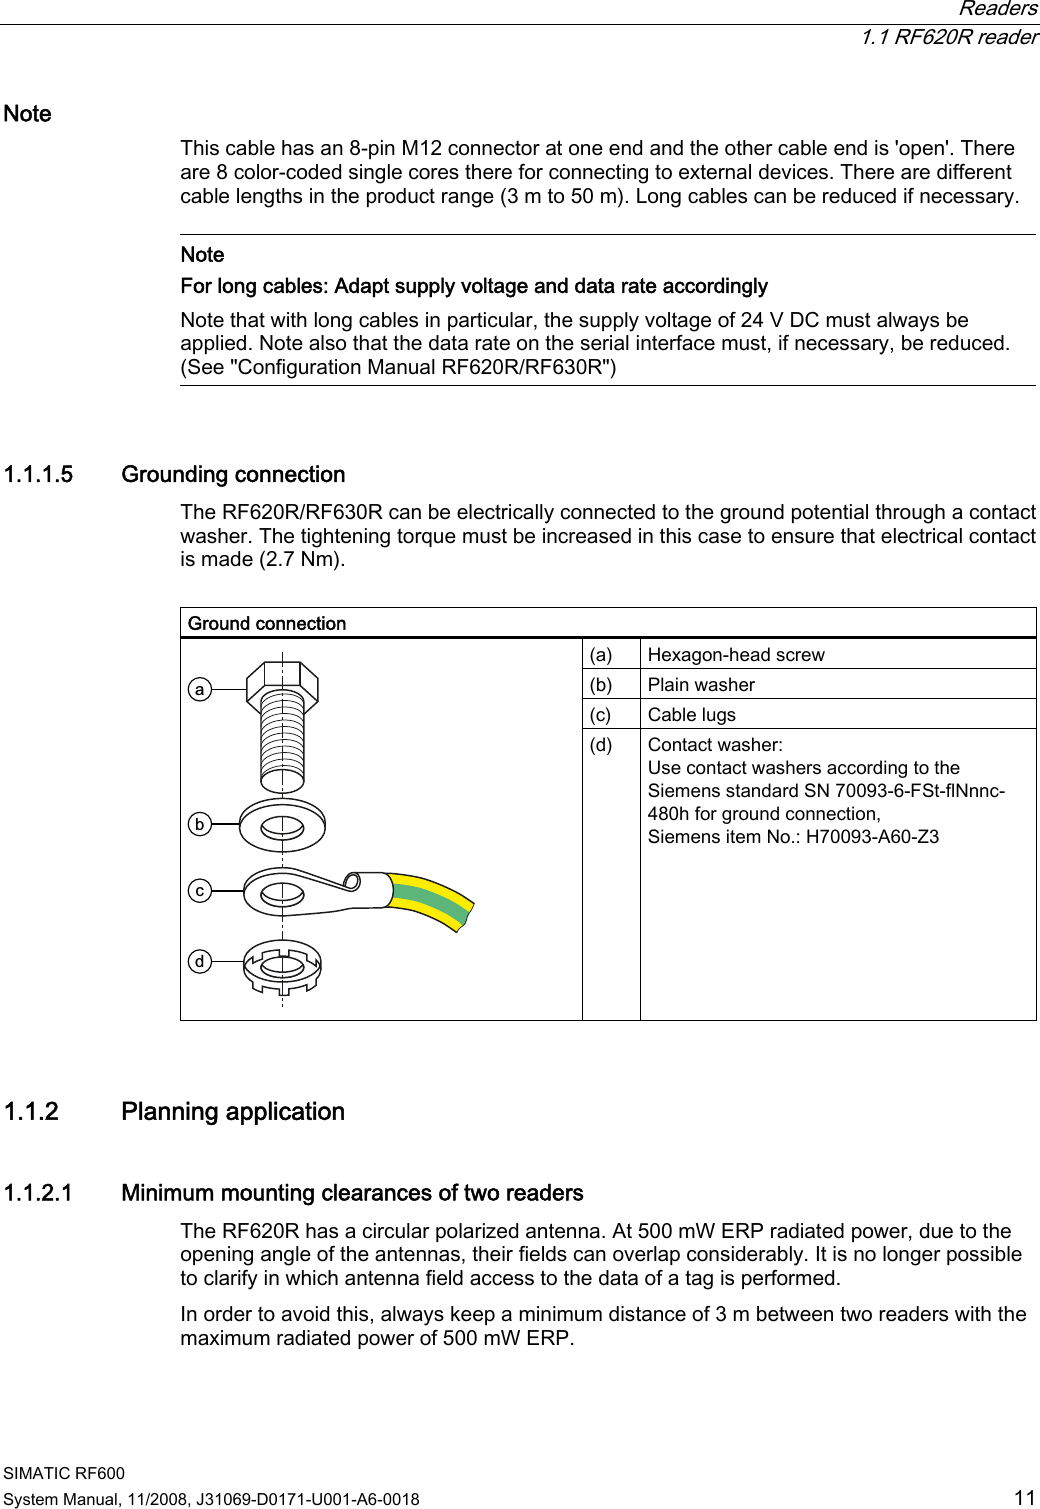 Page 7 of Siemens RF620R UHF RFID READER User Manual System Manual RF600 en